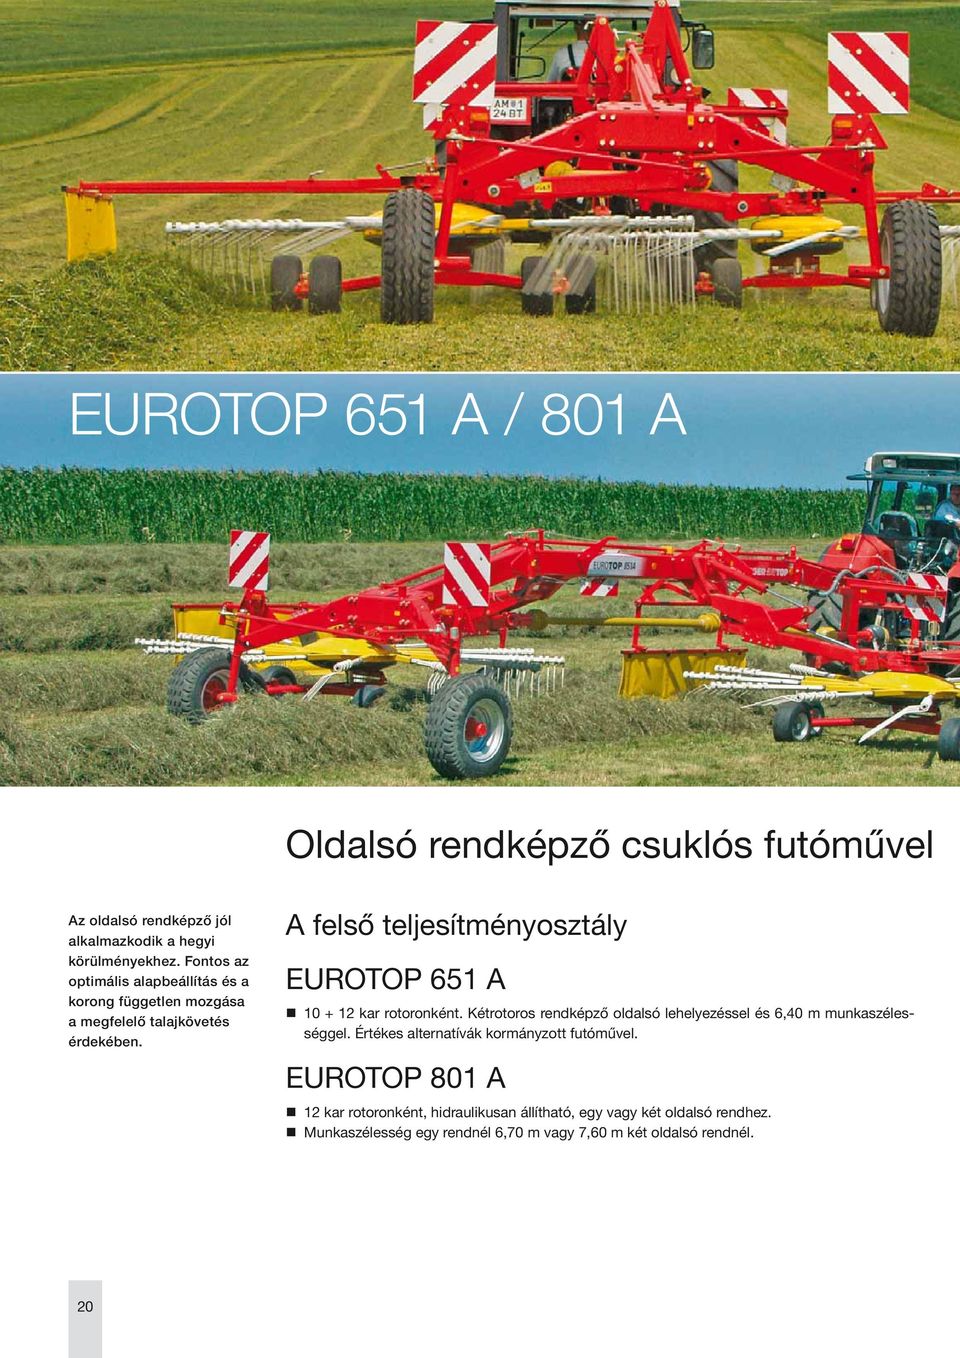 A felső teljesítményosztály EUROTOP 651 A 10 + 12 kar rotoronként. Kétrotoros rendképző oldalsó lehelyezéssel és 6,40 m munkaszélességgel.